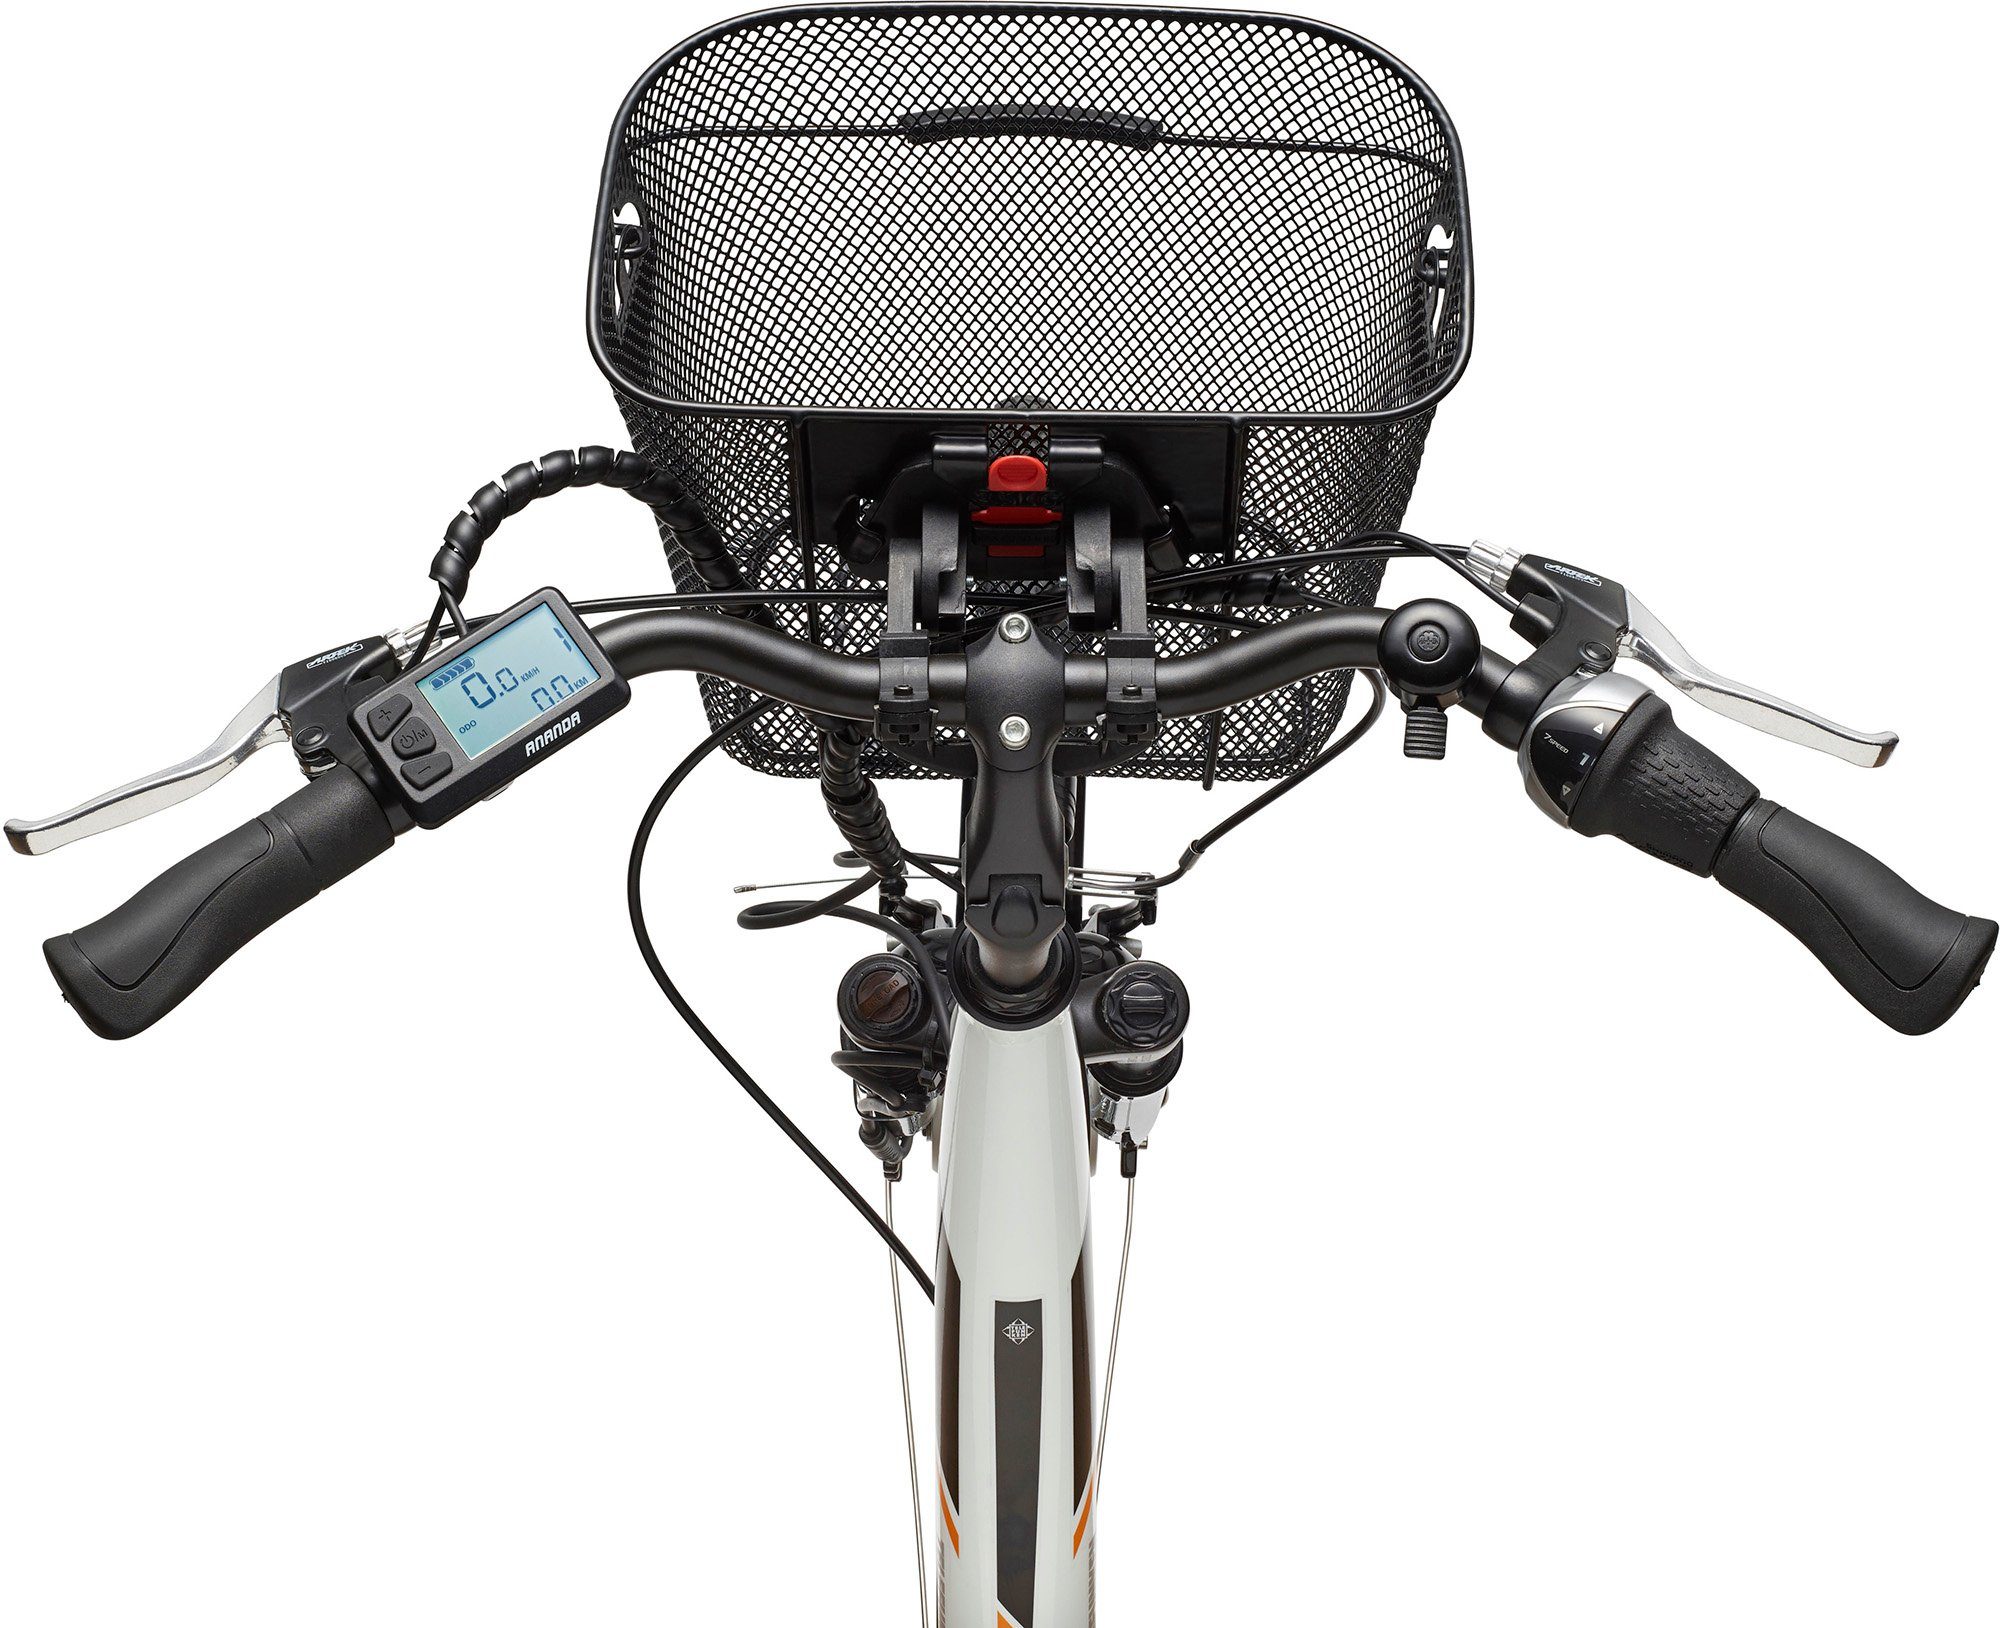 Telefunken E-Bike Fahrradkorb 374,4 Multitalent Nexus RC840, mit Wh Schaltwerk, Akku, Shimano Frontmotor, Gang 7